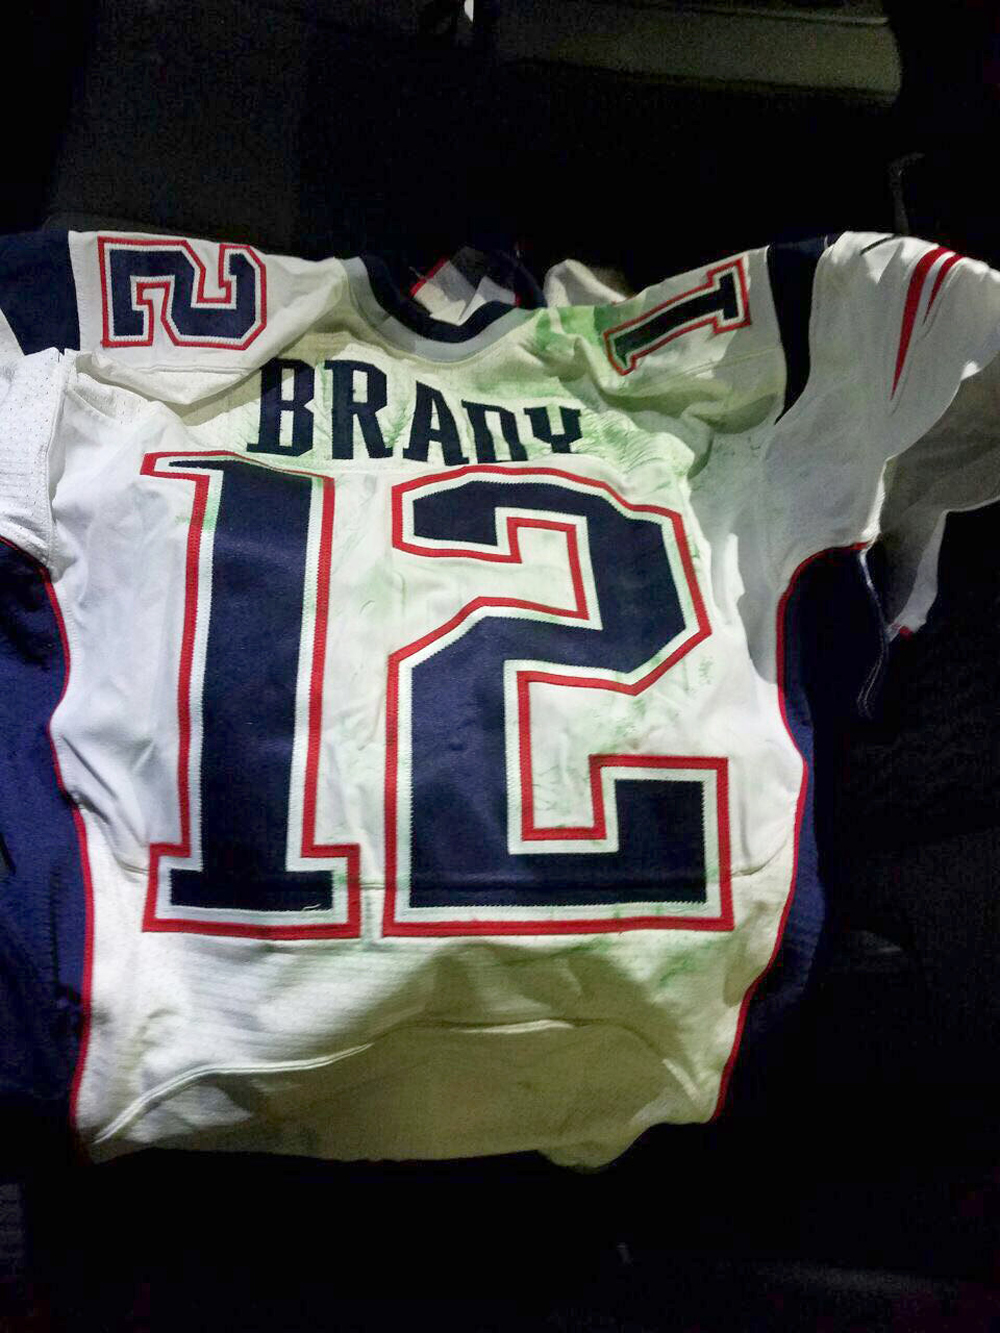 Mauricio Ortega devolvió el jersey que Tom Brady usó en el Super Bowl XLI